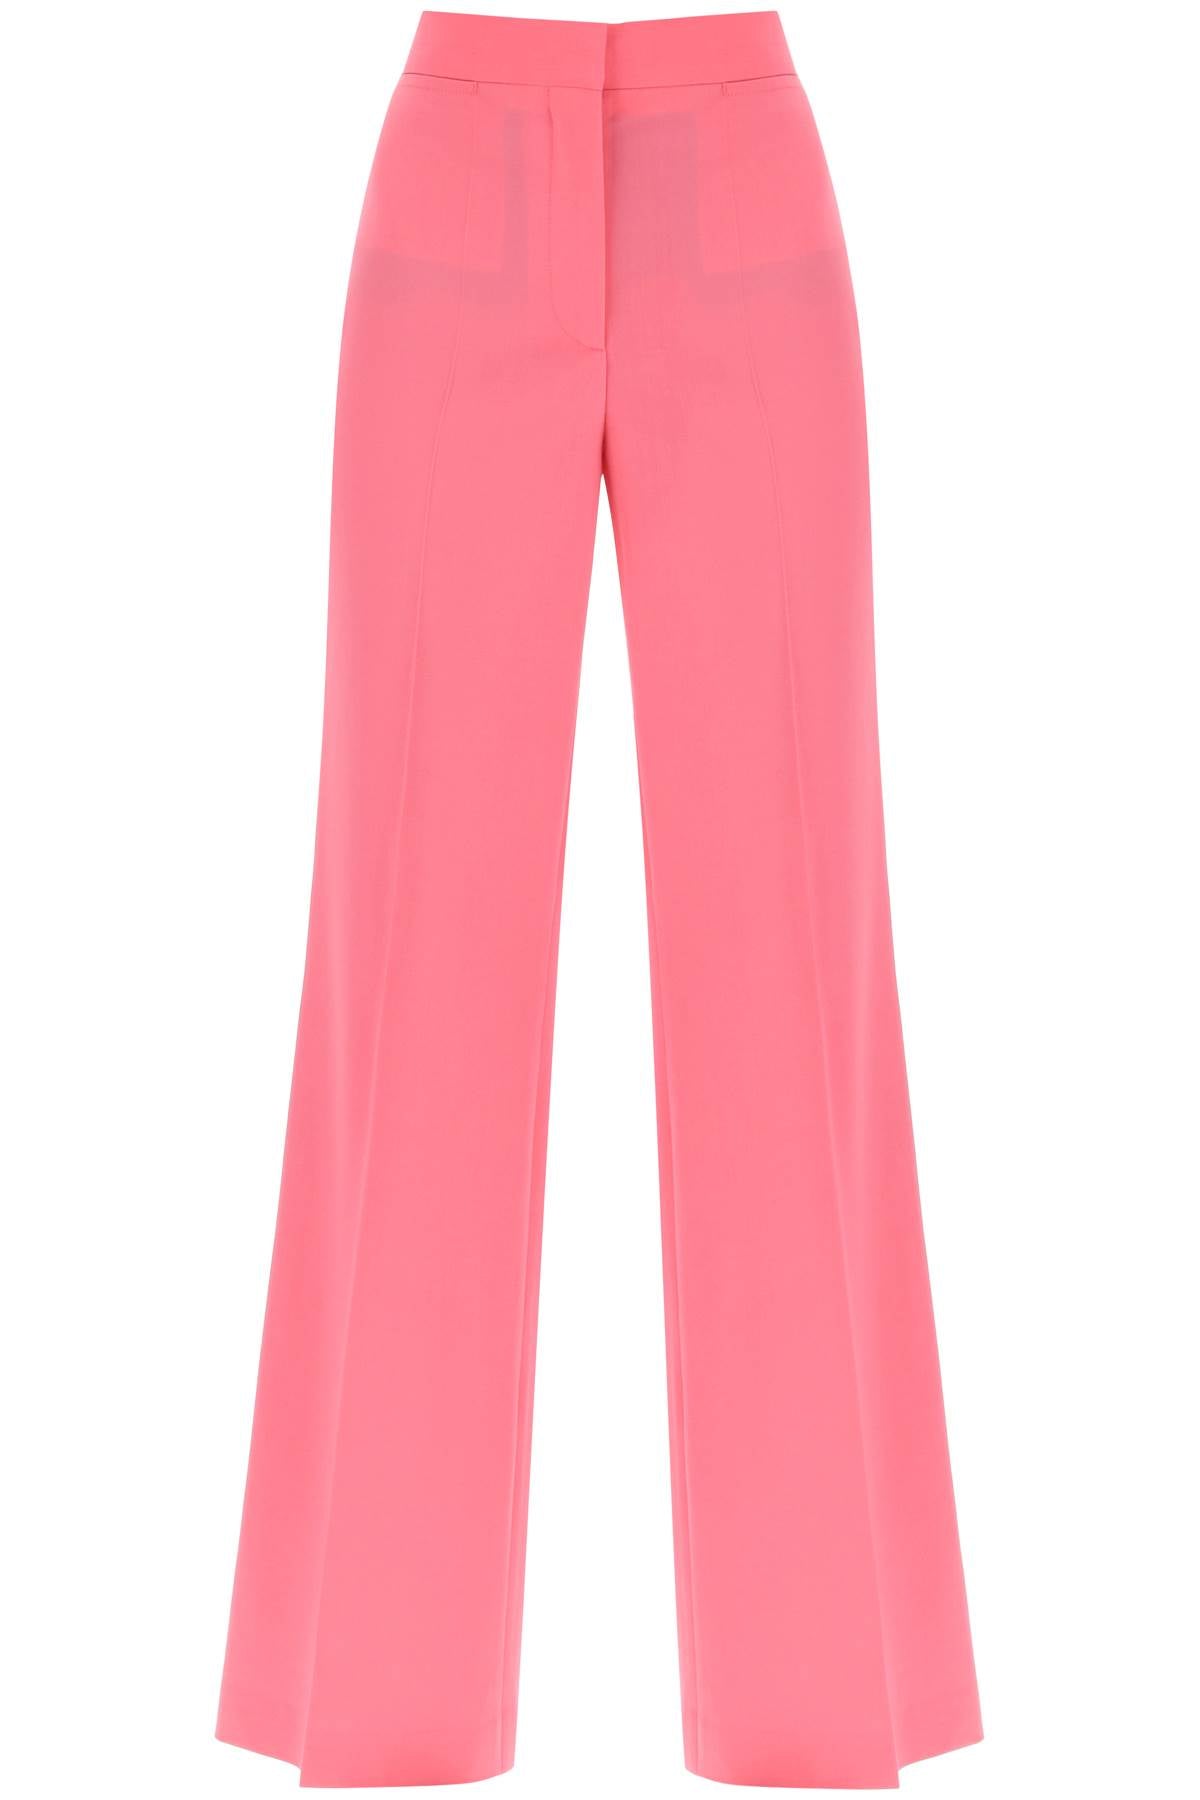 Stella Mccartney Watermelon Pink Wool Palazzo Trousers For Women